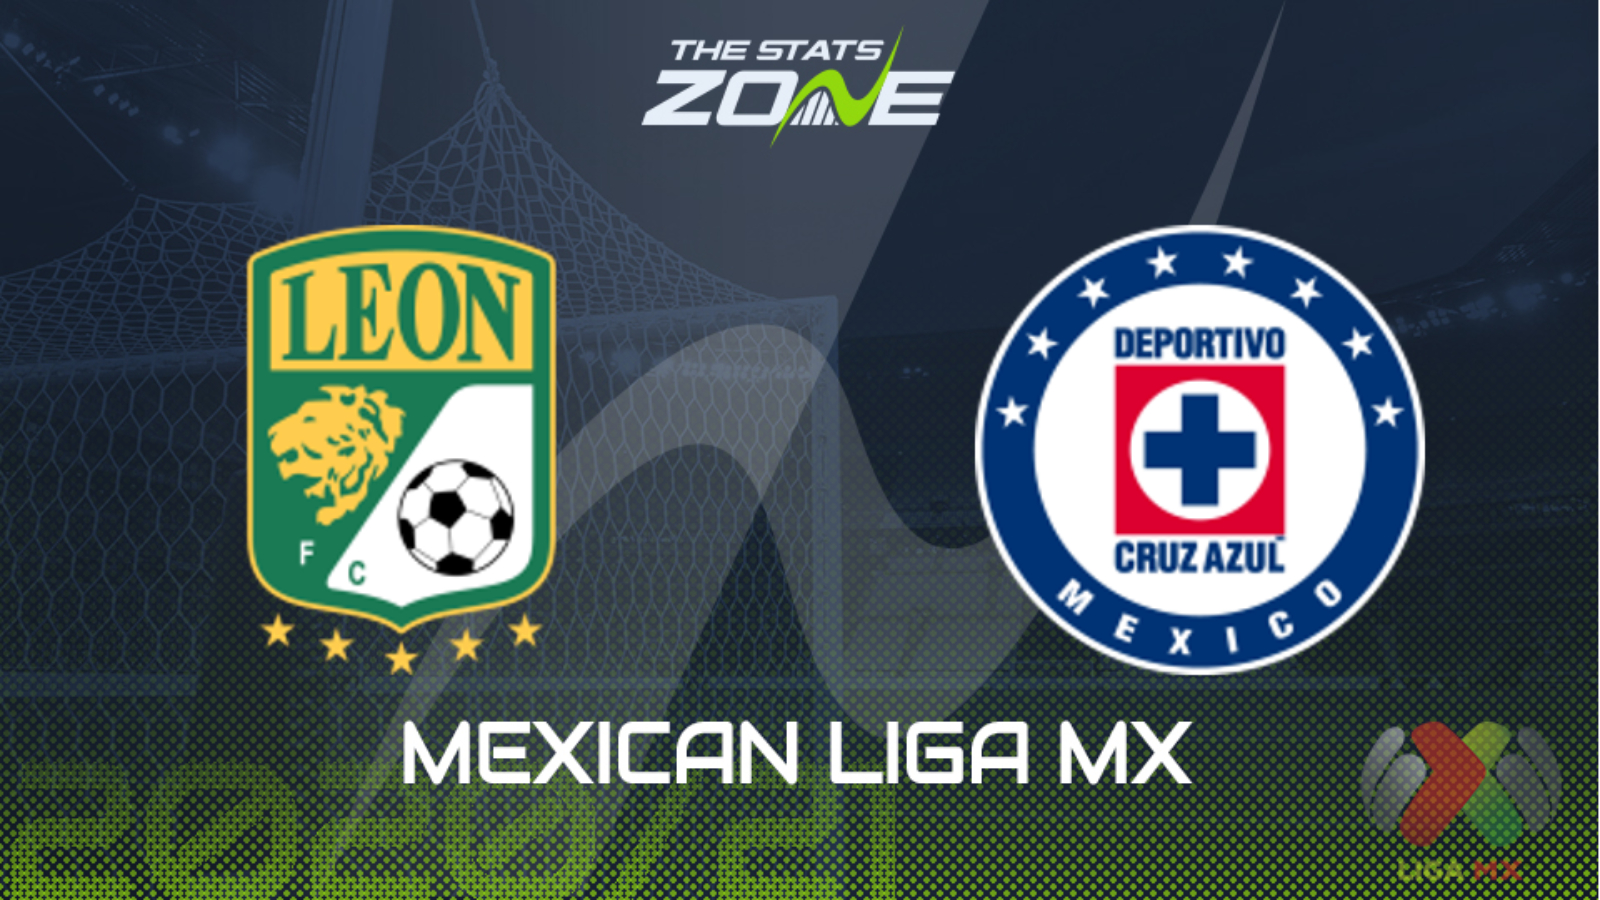 2020 21 Mexican Liga Mx Leon Vs Cruz Azul Preview Prediction The Stats Zone